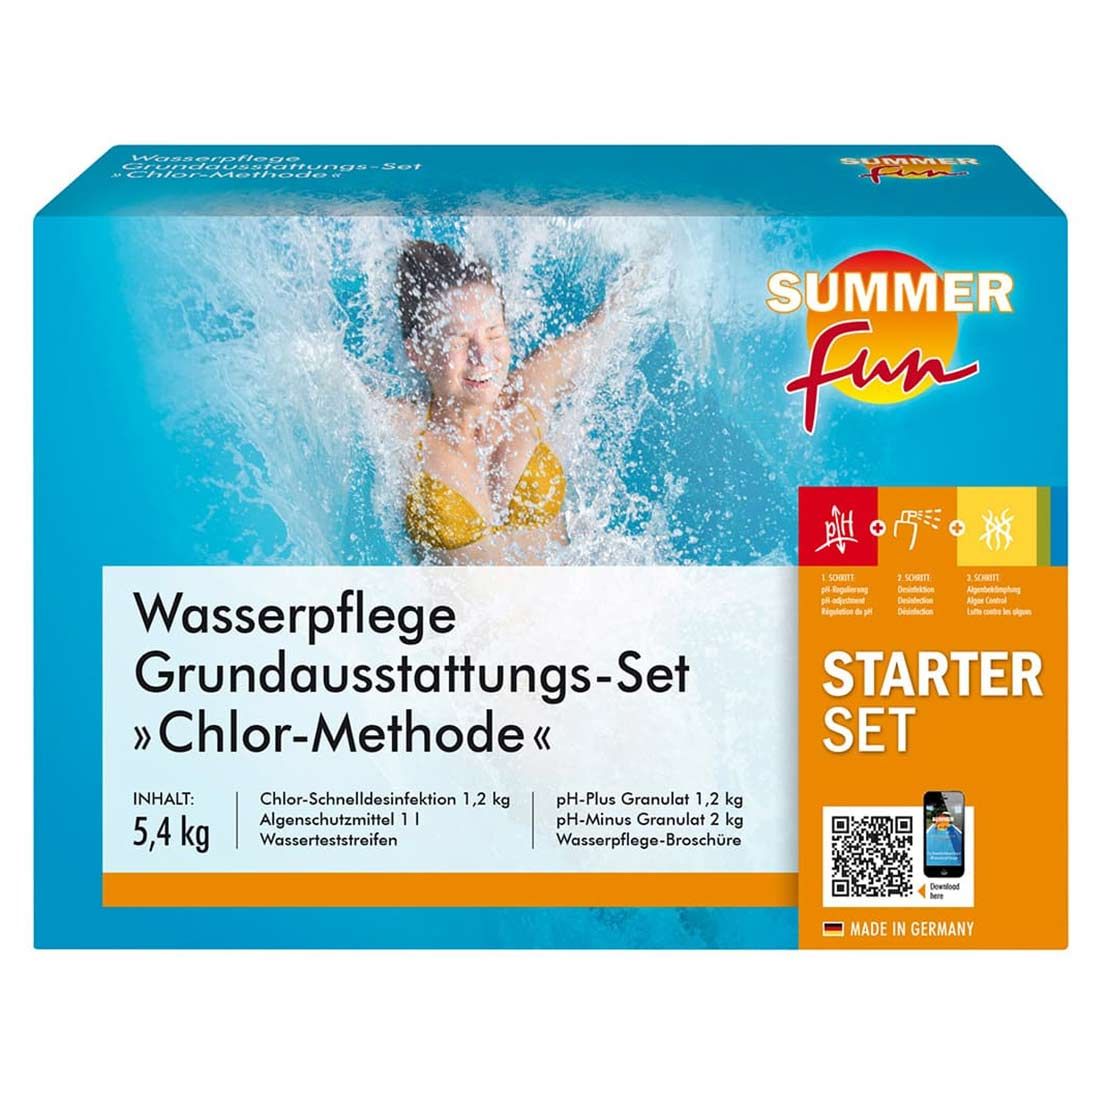 Summer Fun Wasserpflege Grundausstattungs-Set Chlor